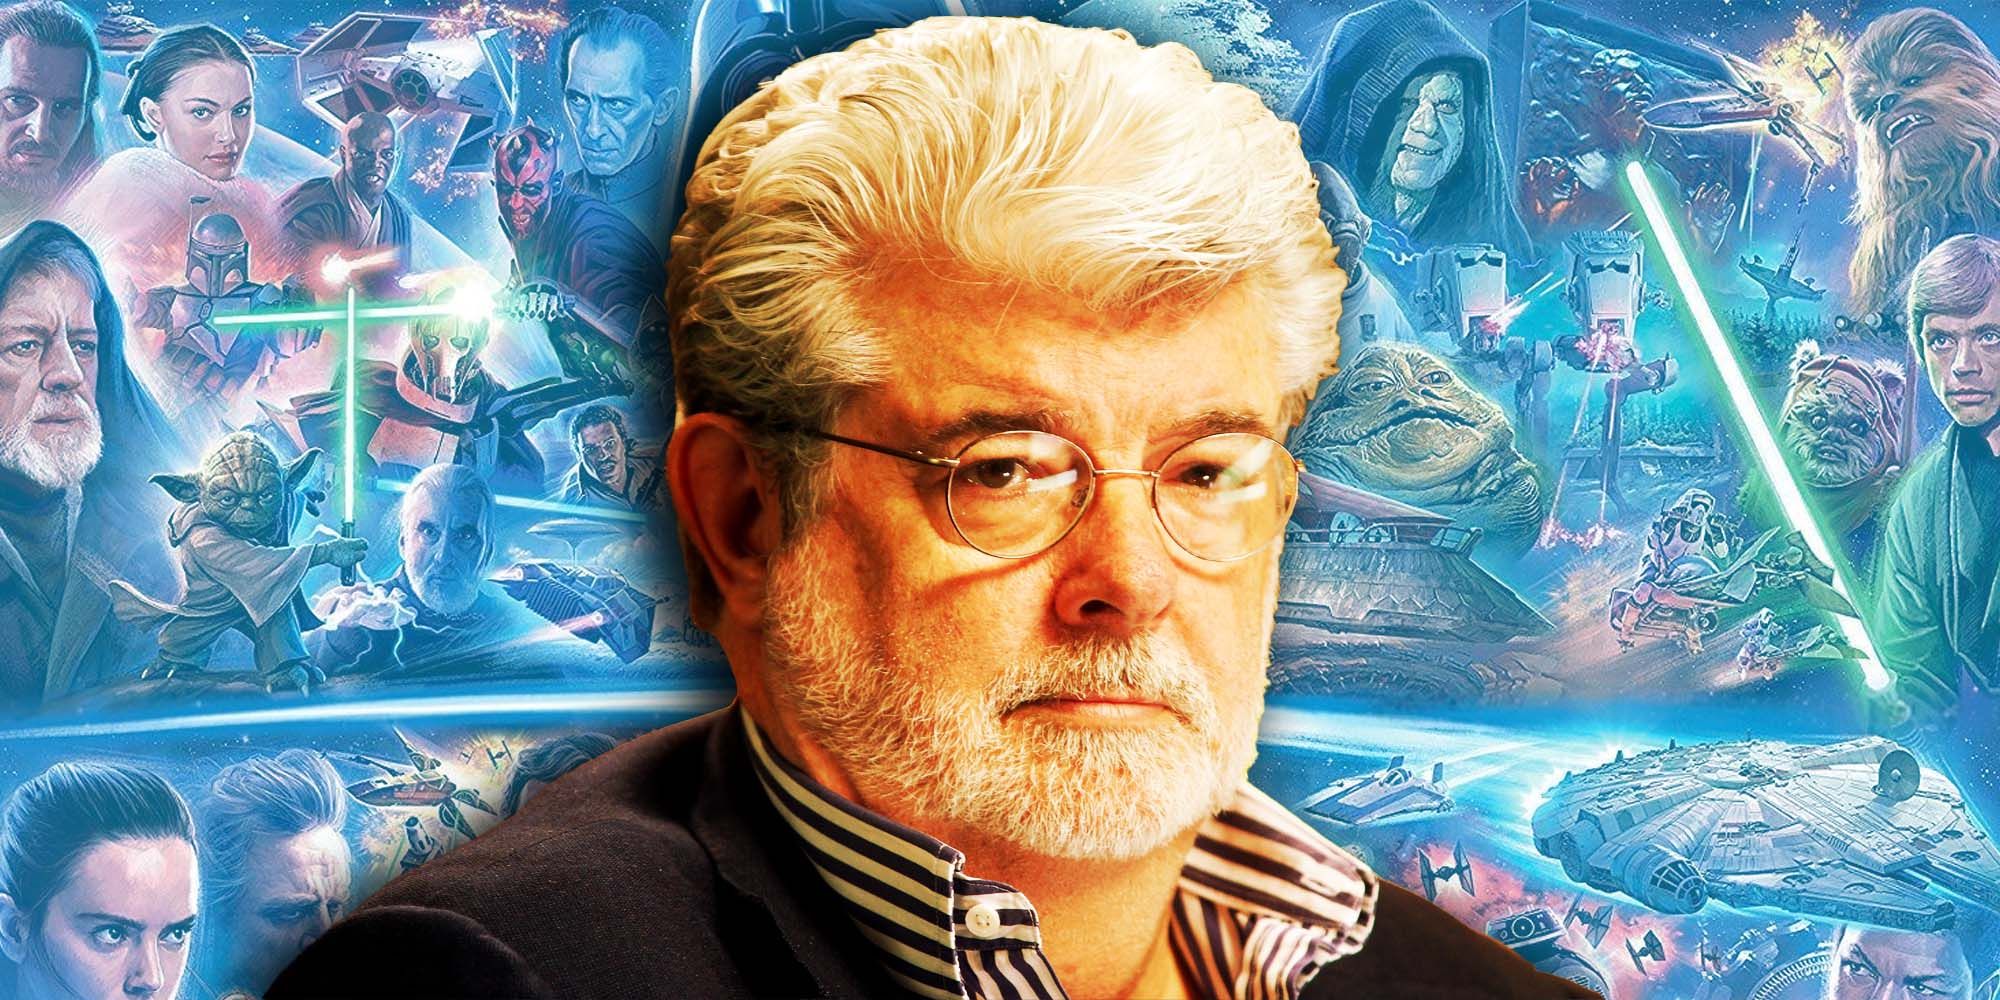 George Lucas Star wars prequels